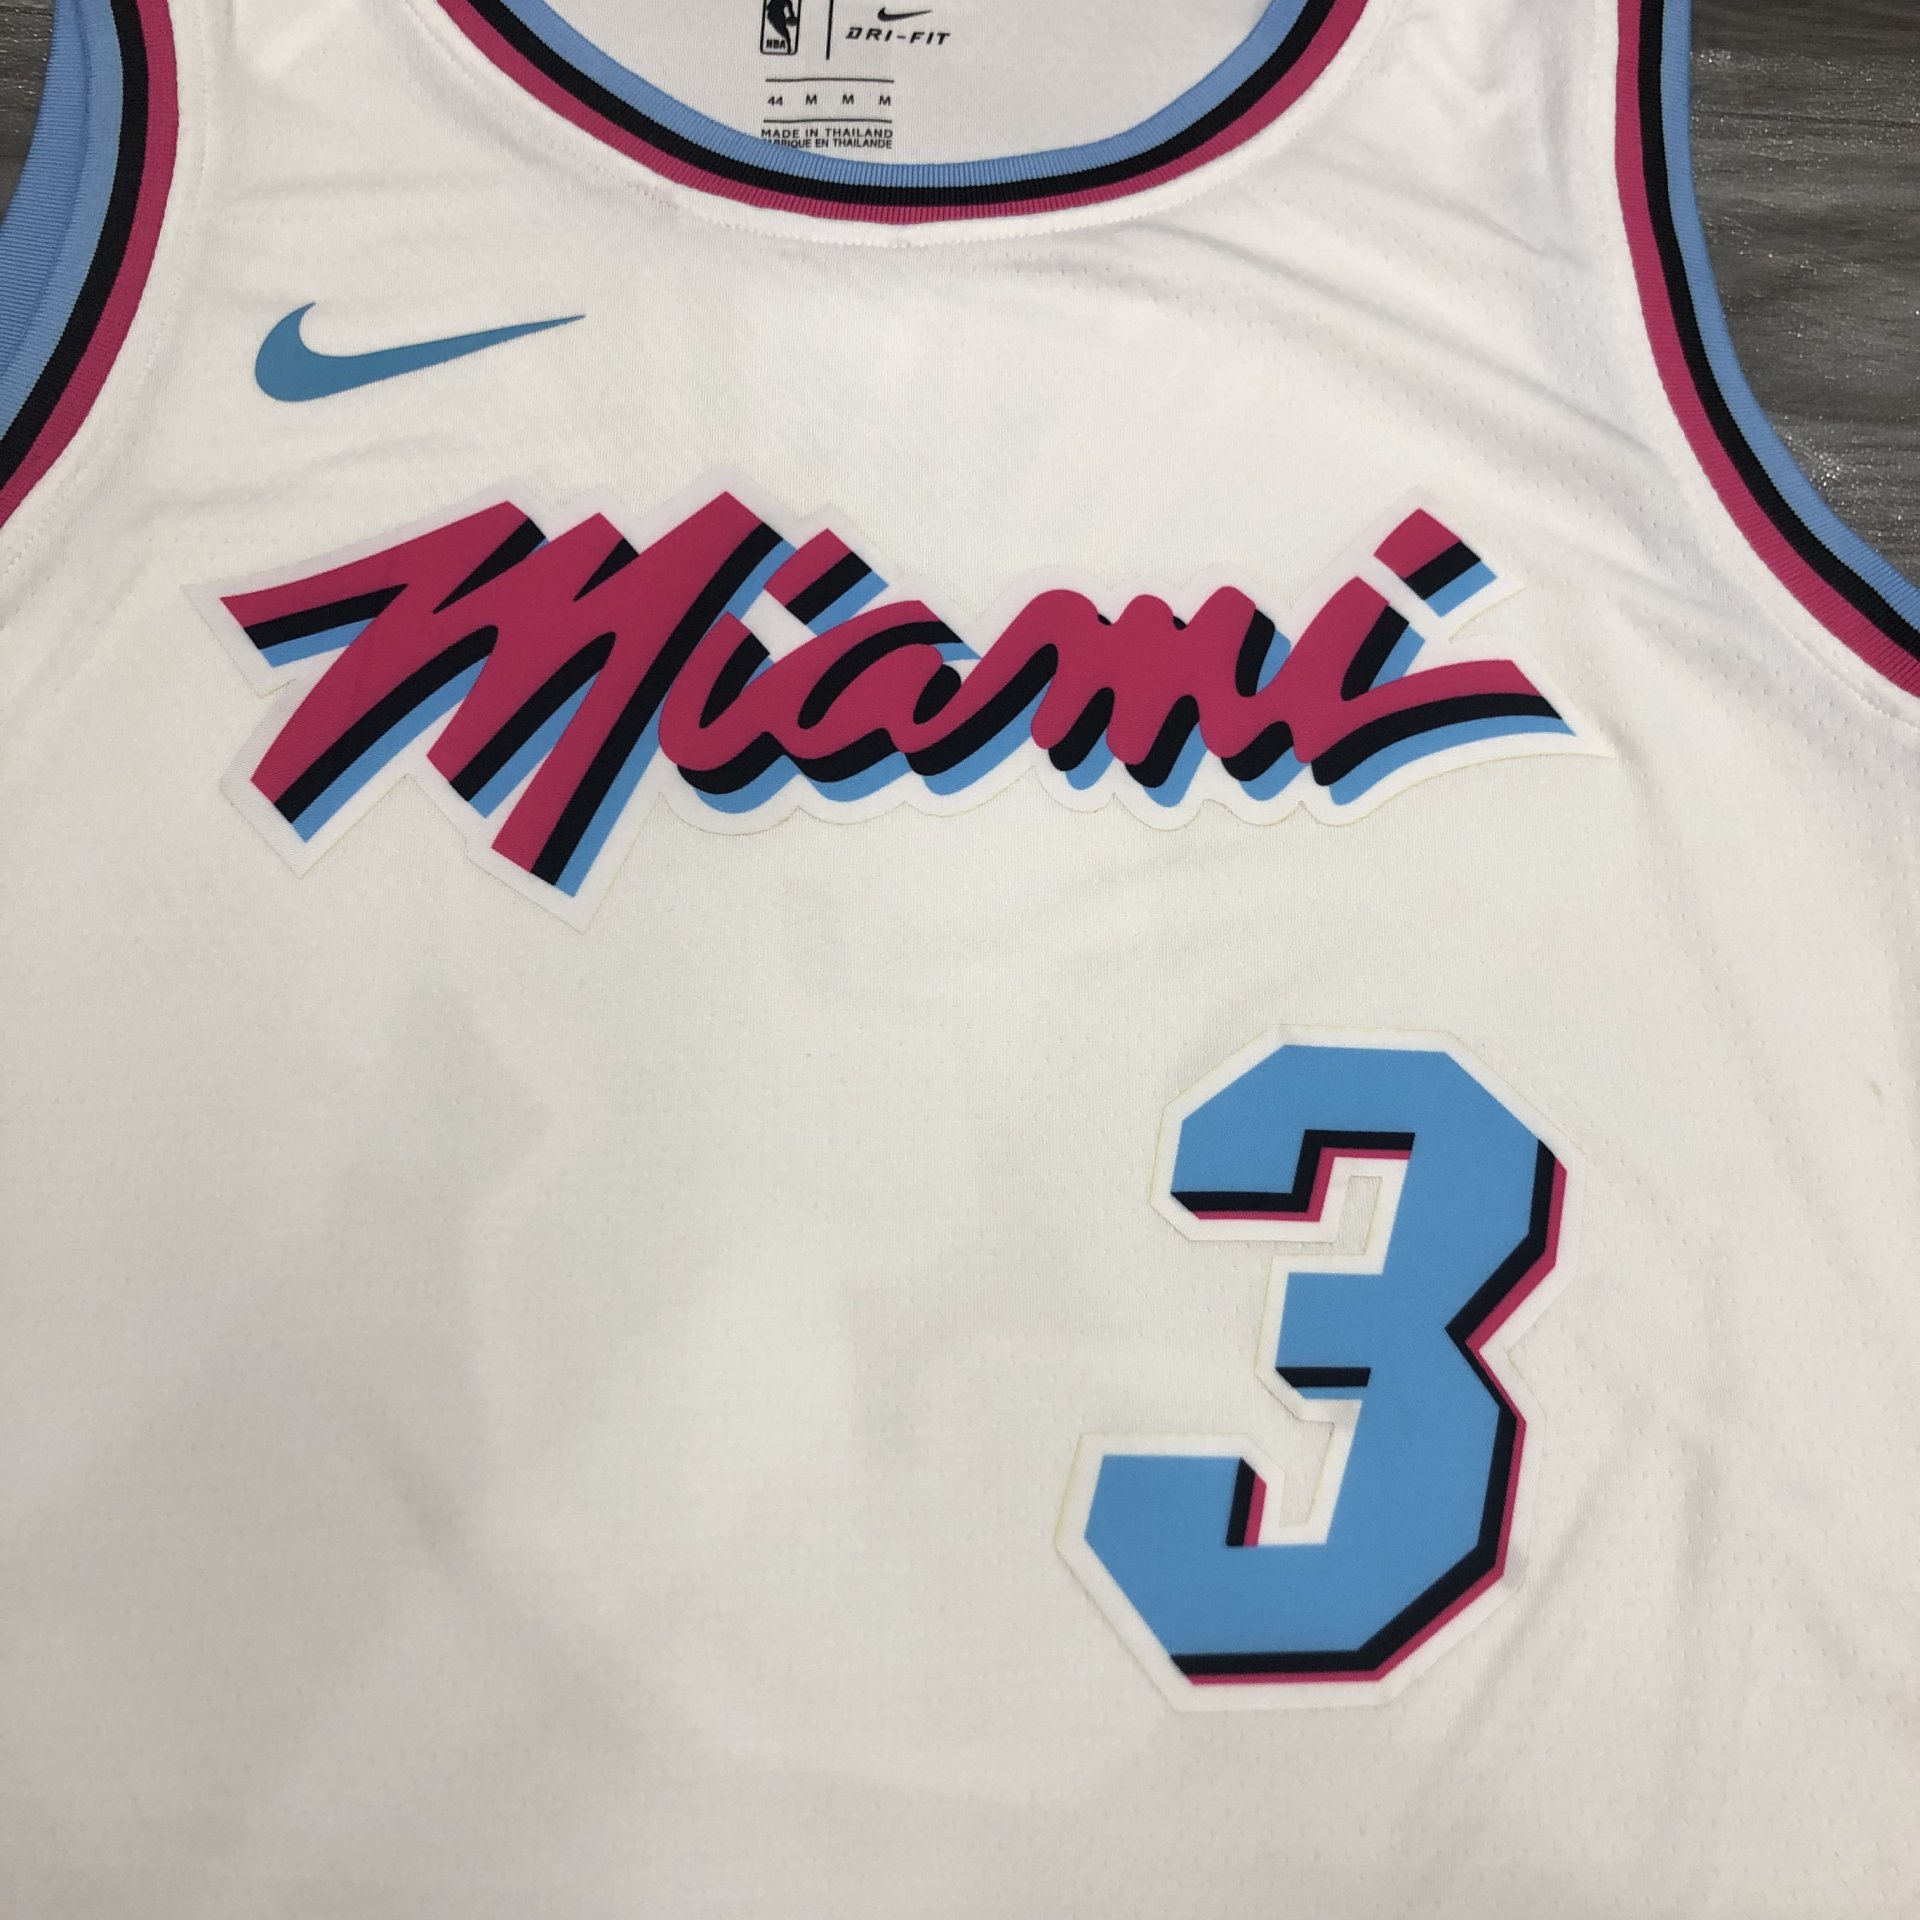 Dwyane Wade - Miami Heat *VICE - White* #3 - JerseyAve - Marketplace